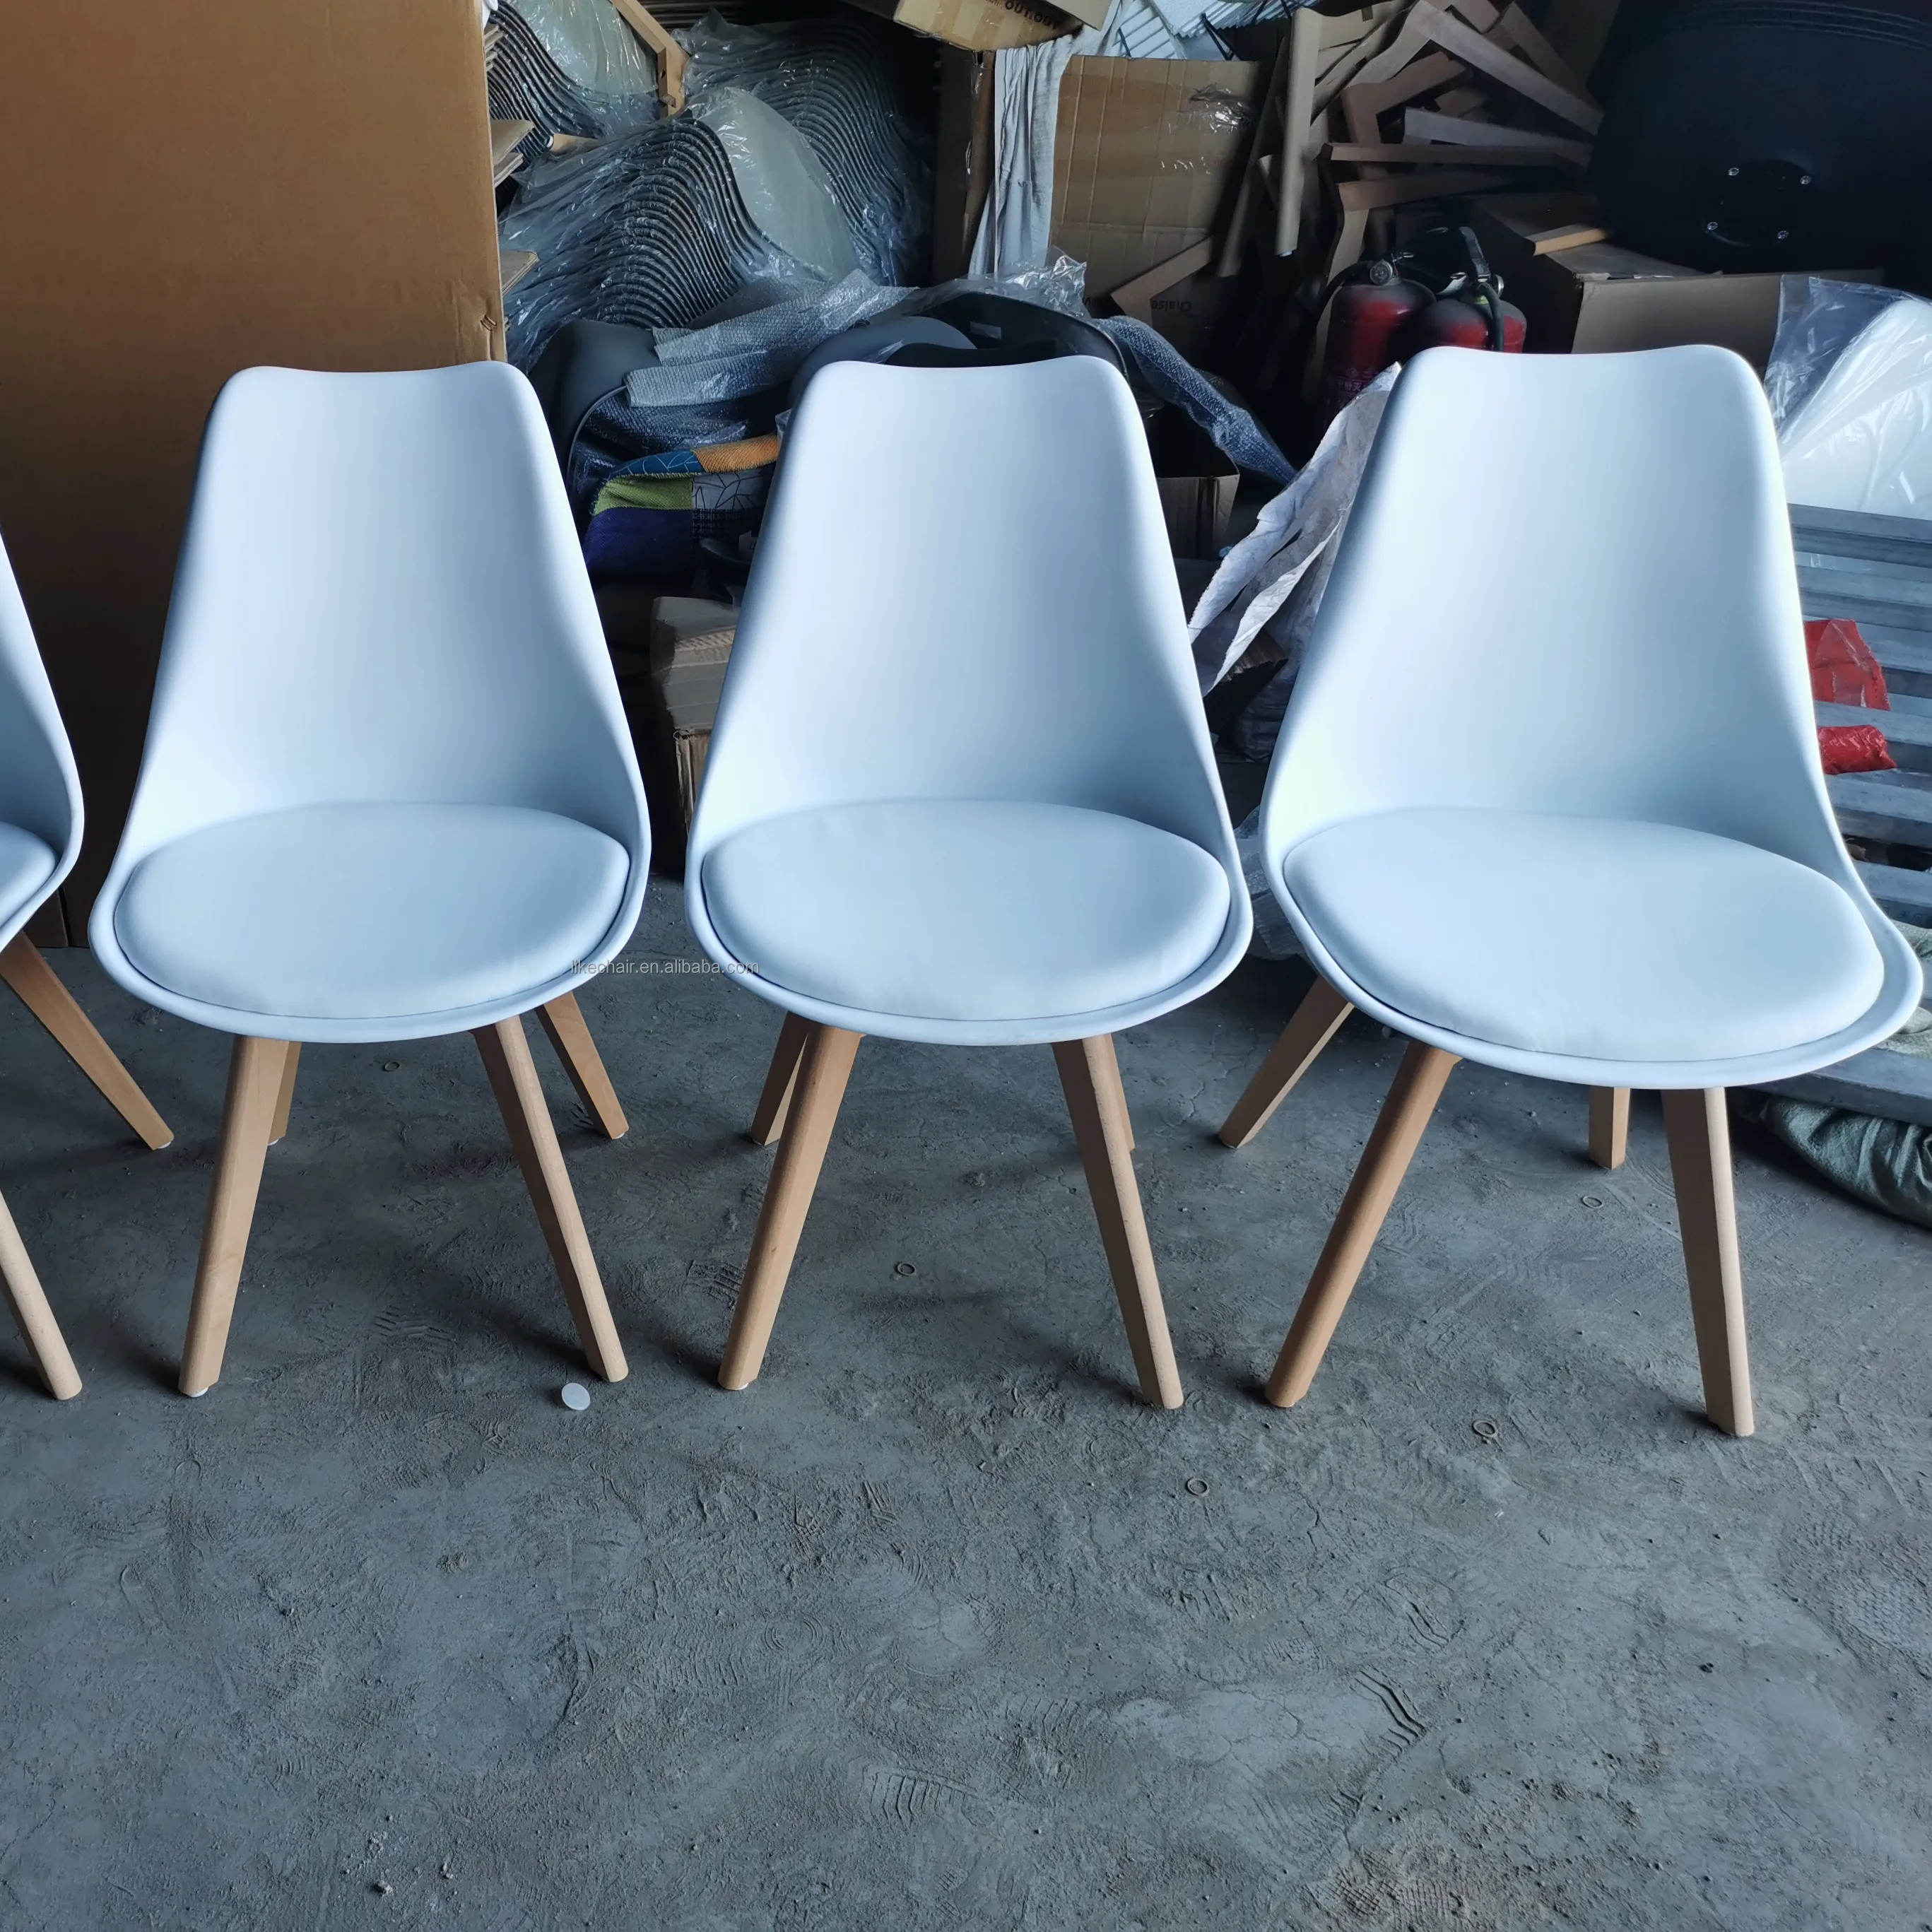 كراسي غرفة الطعام الرخيصة بالجملة عينة مجانية تصميم الأثاث المنزلي البلاستيك نمط الخشب الجديد إجمالي توليب الساقين الخشبية كرسي